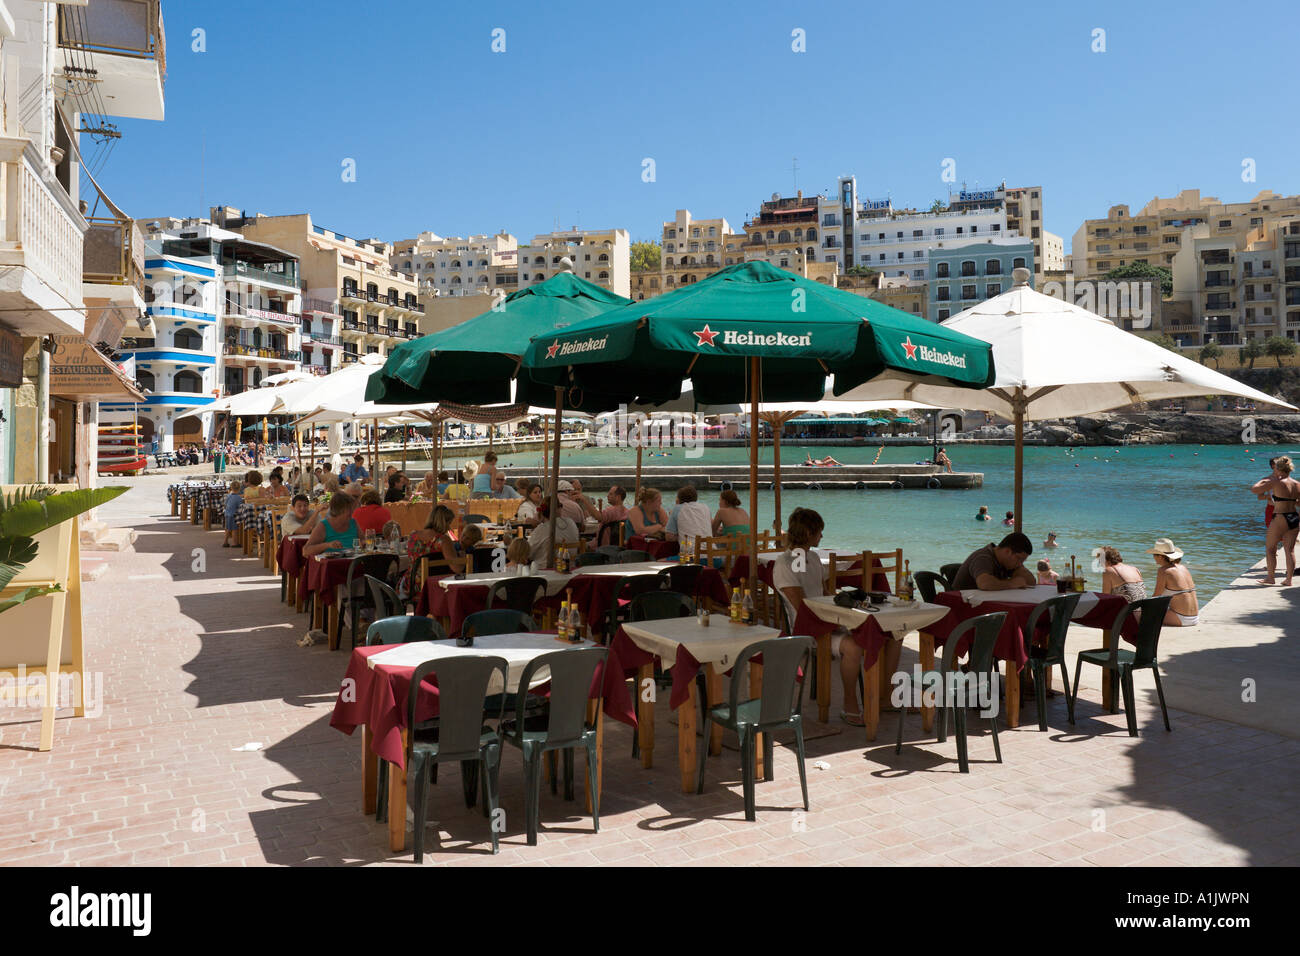 Ristorante sul mare, Xlendi a Gozo, Malta Foto Stock